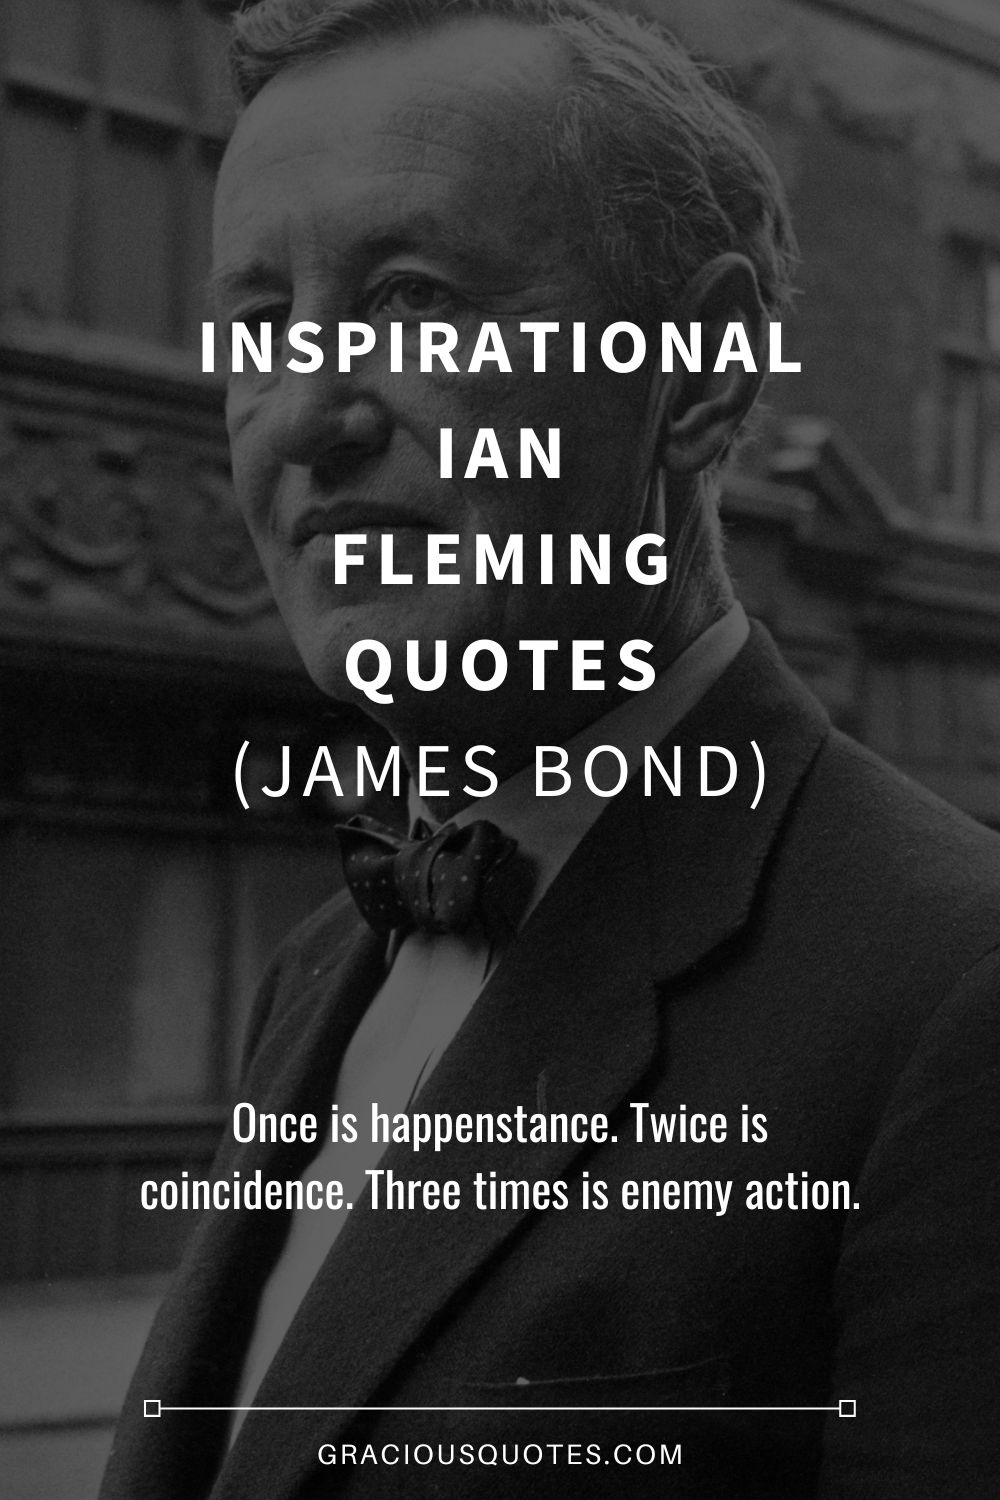 Inspirational Ian Fleming Quotes (JAMES BOND) - Gracious Quotes